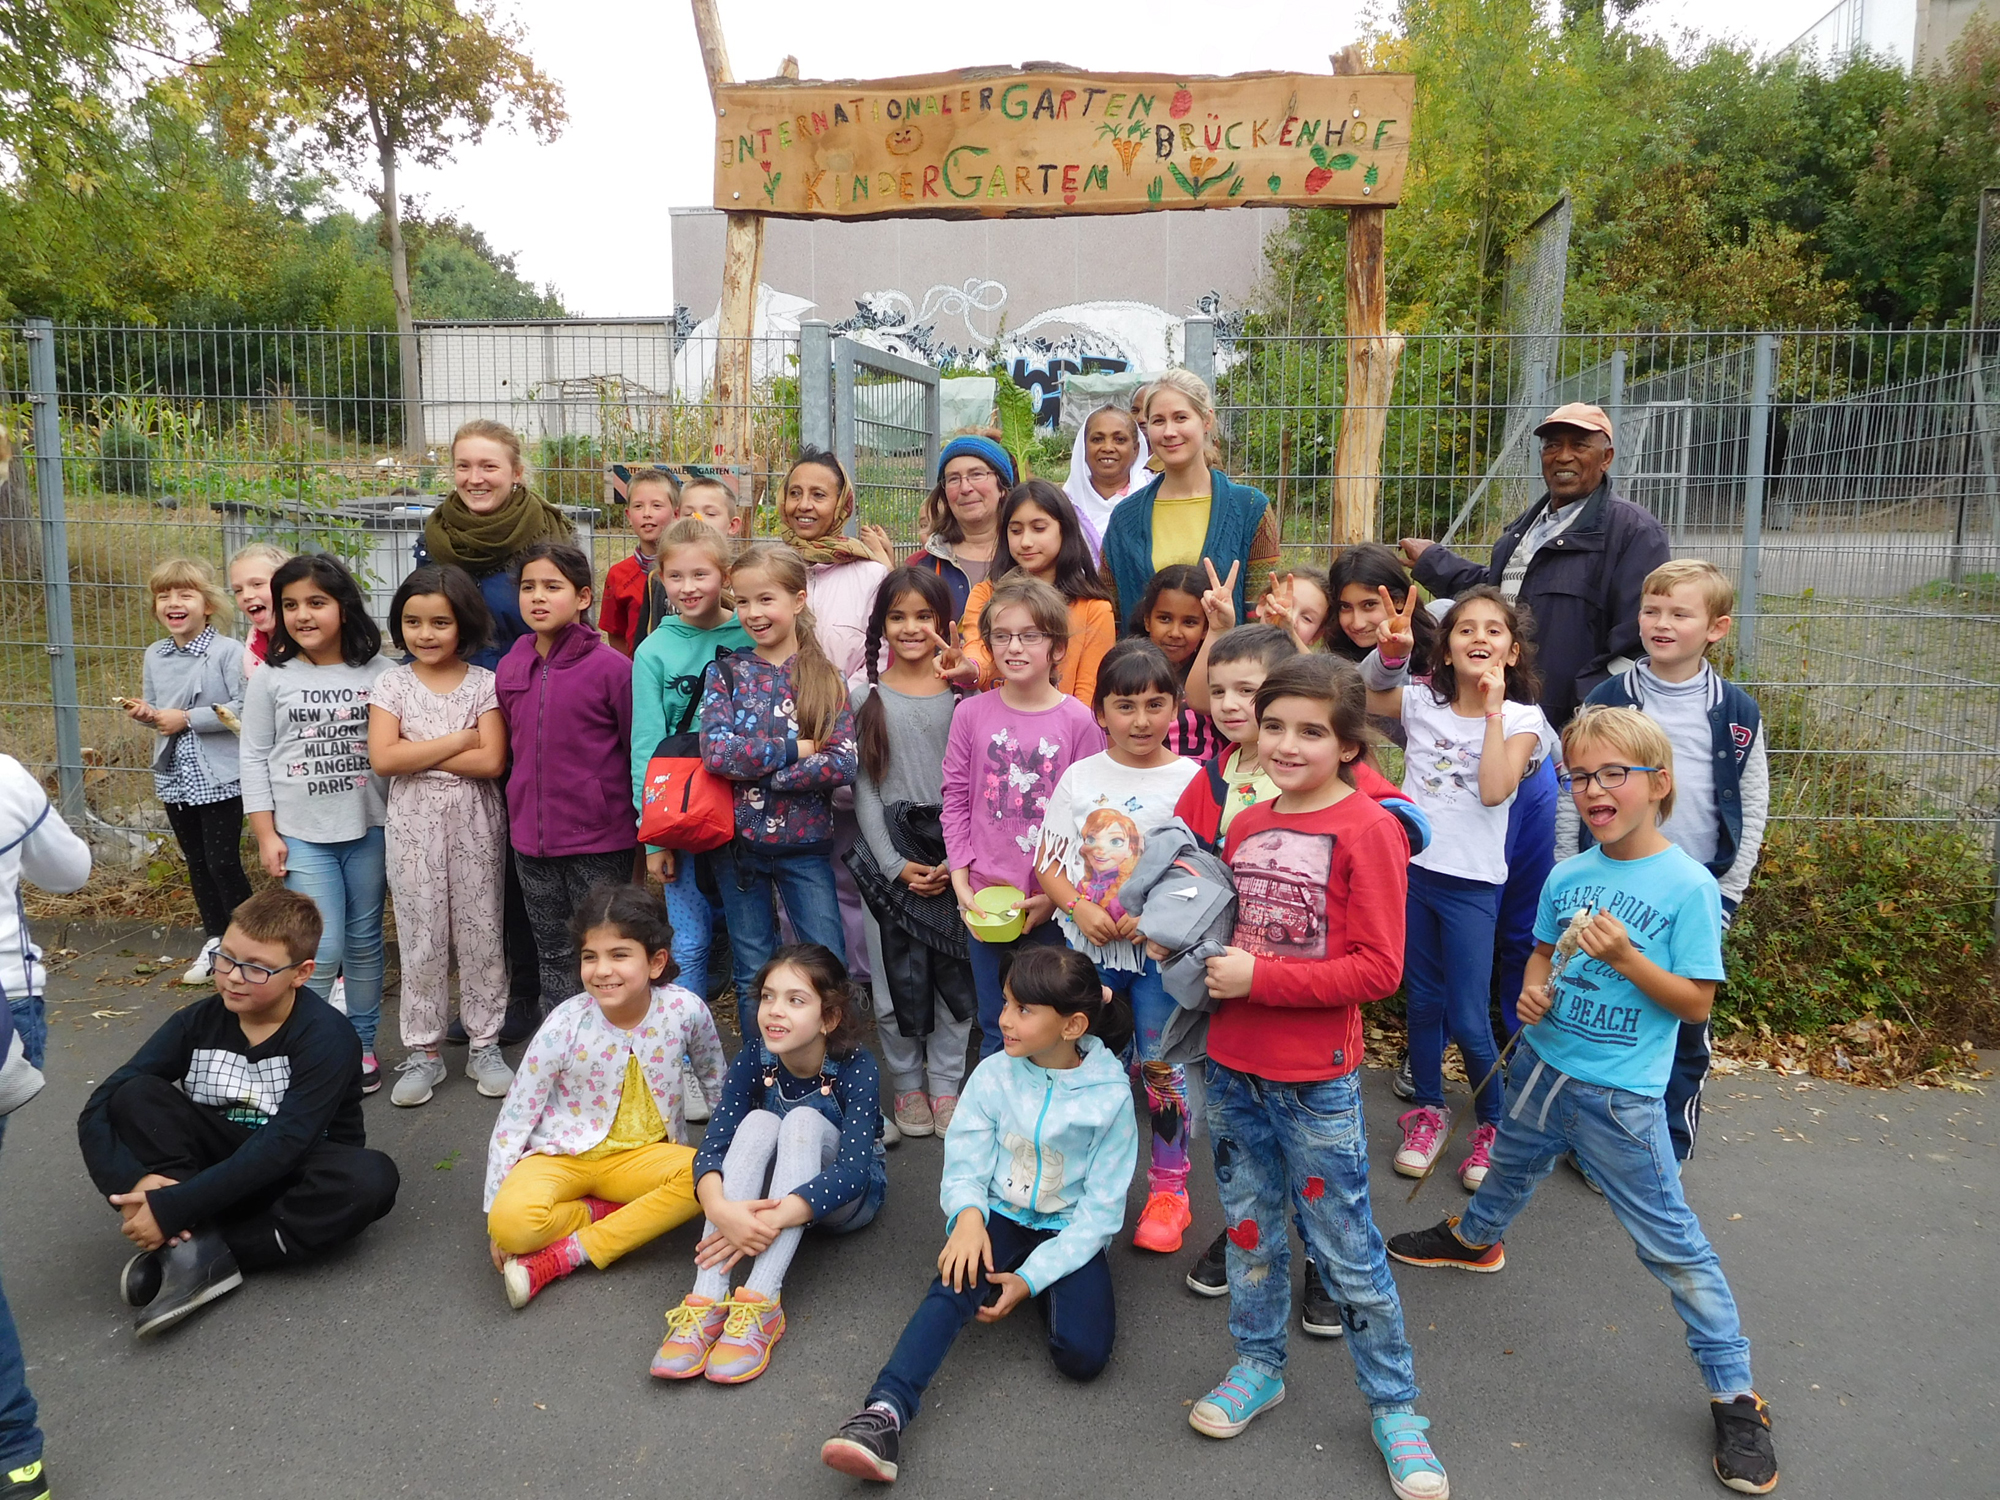 30.9.16, Kindergarten Herbstfest, Einweihung neues Eingangsschild mit Gärtnern vom Internationalen Garten Brückenhof